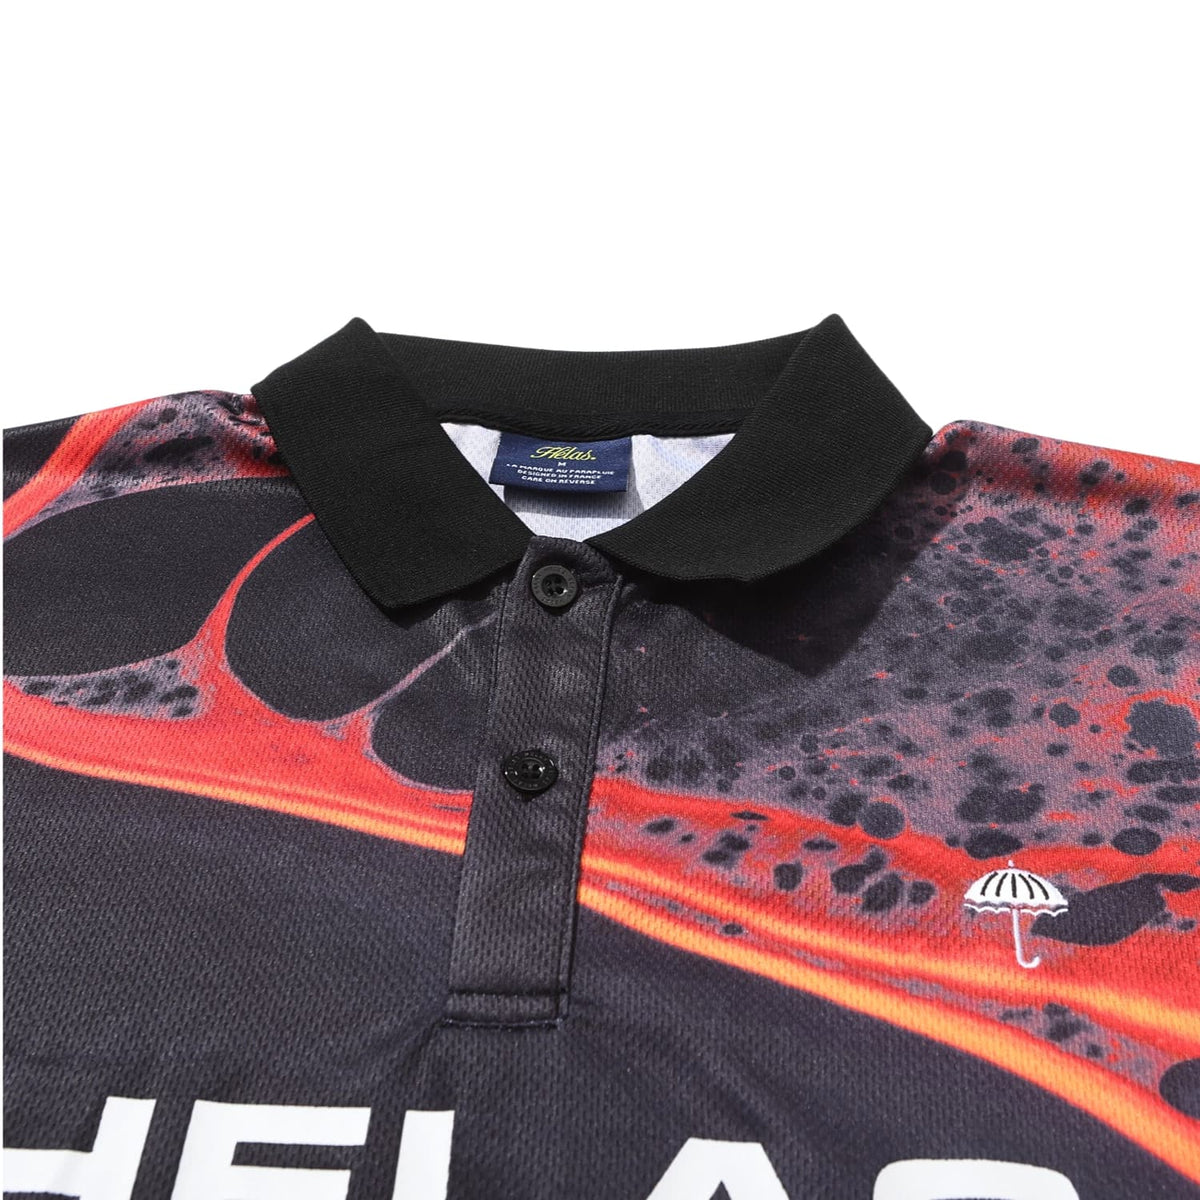 Helas Liquid Longsleeve Polo Shirt - Black - Mens Polo Shirt by Helas